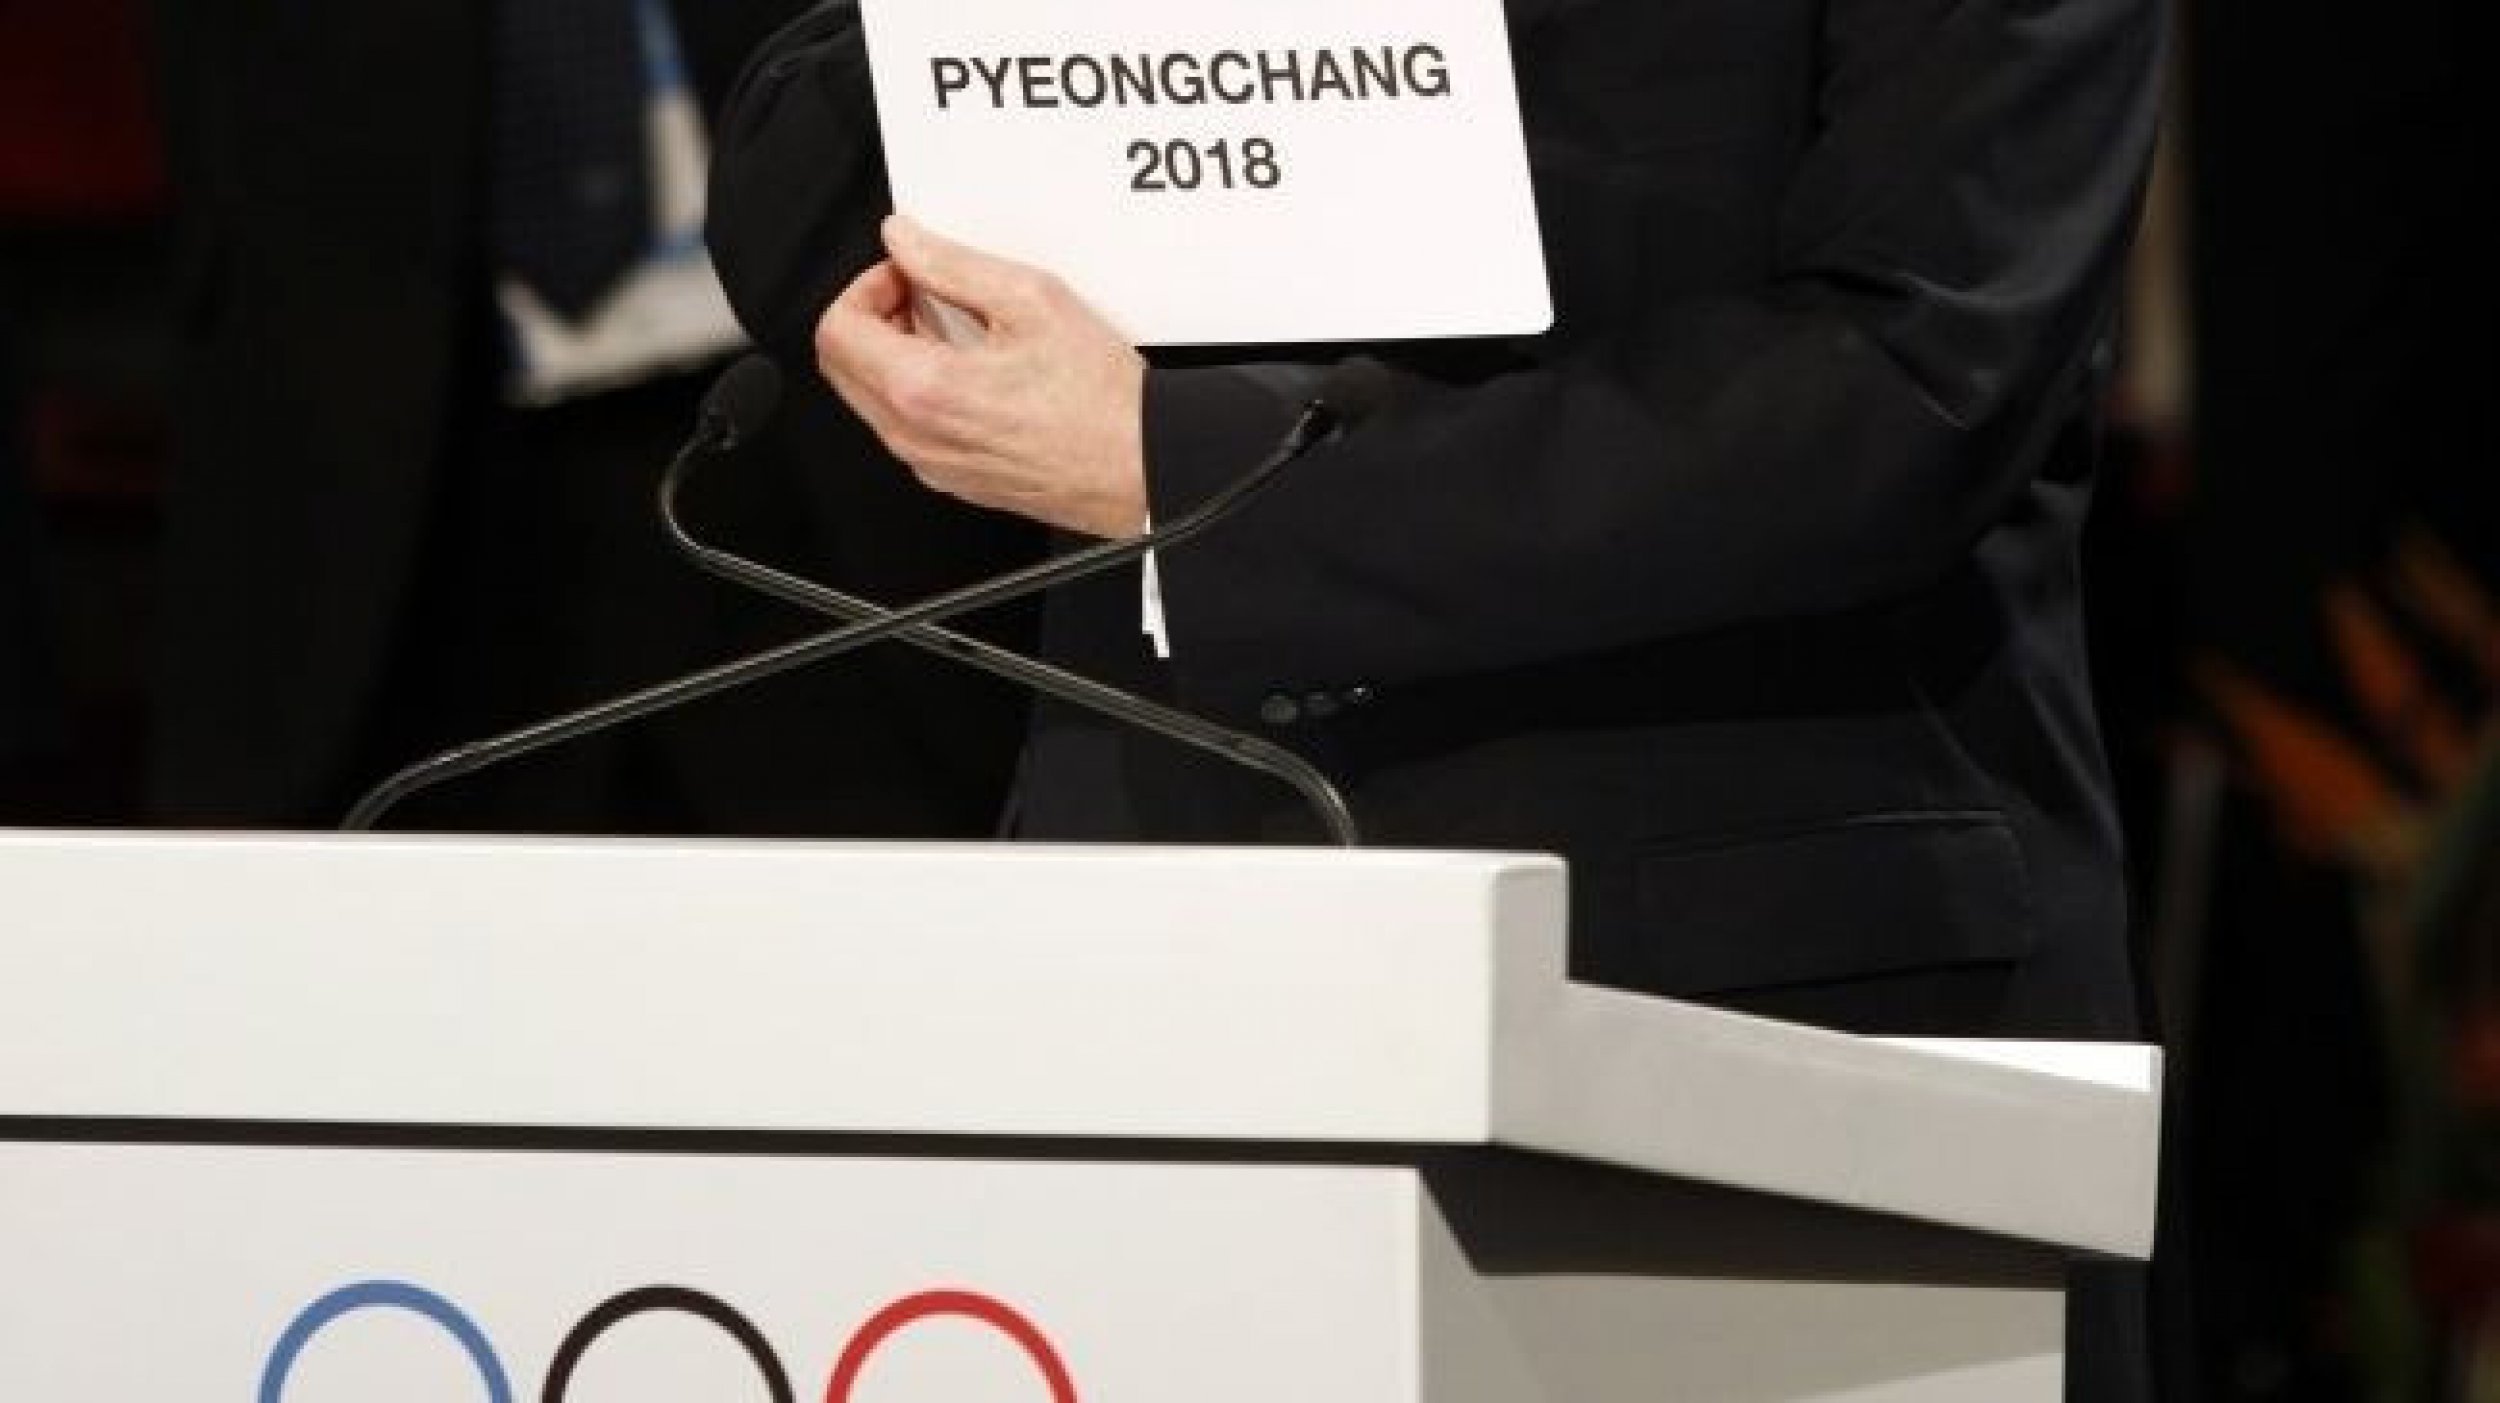 Winter Olympics 2018 Pyeongchang South Korea Awarded Honor